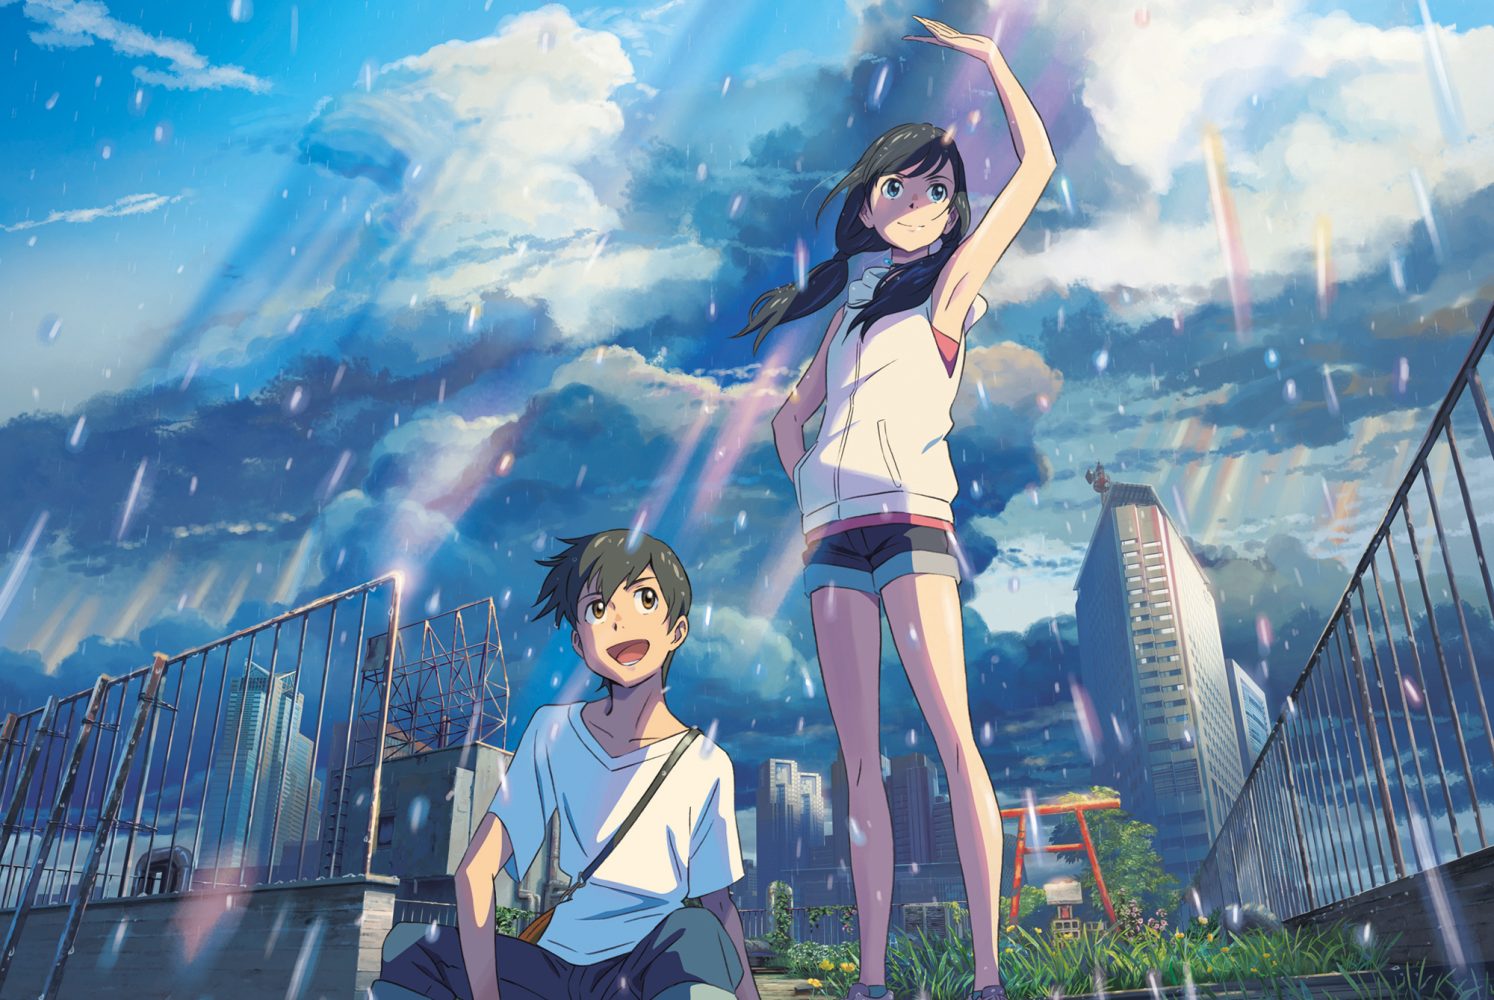 Những bộ phim anime tình cảm hay nhất Nhật Bản: Đứa con của thời tiết - Weathering With You (2019)